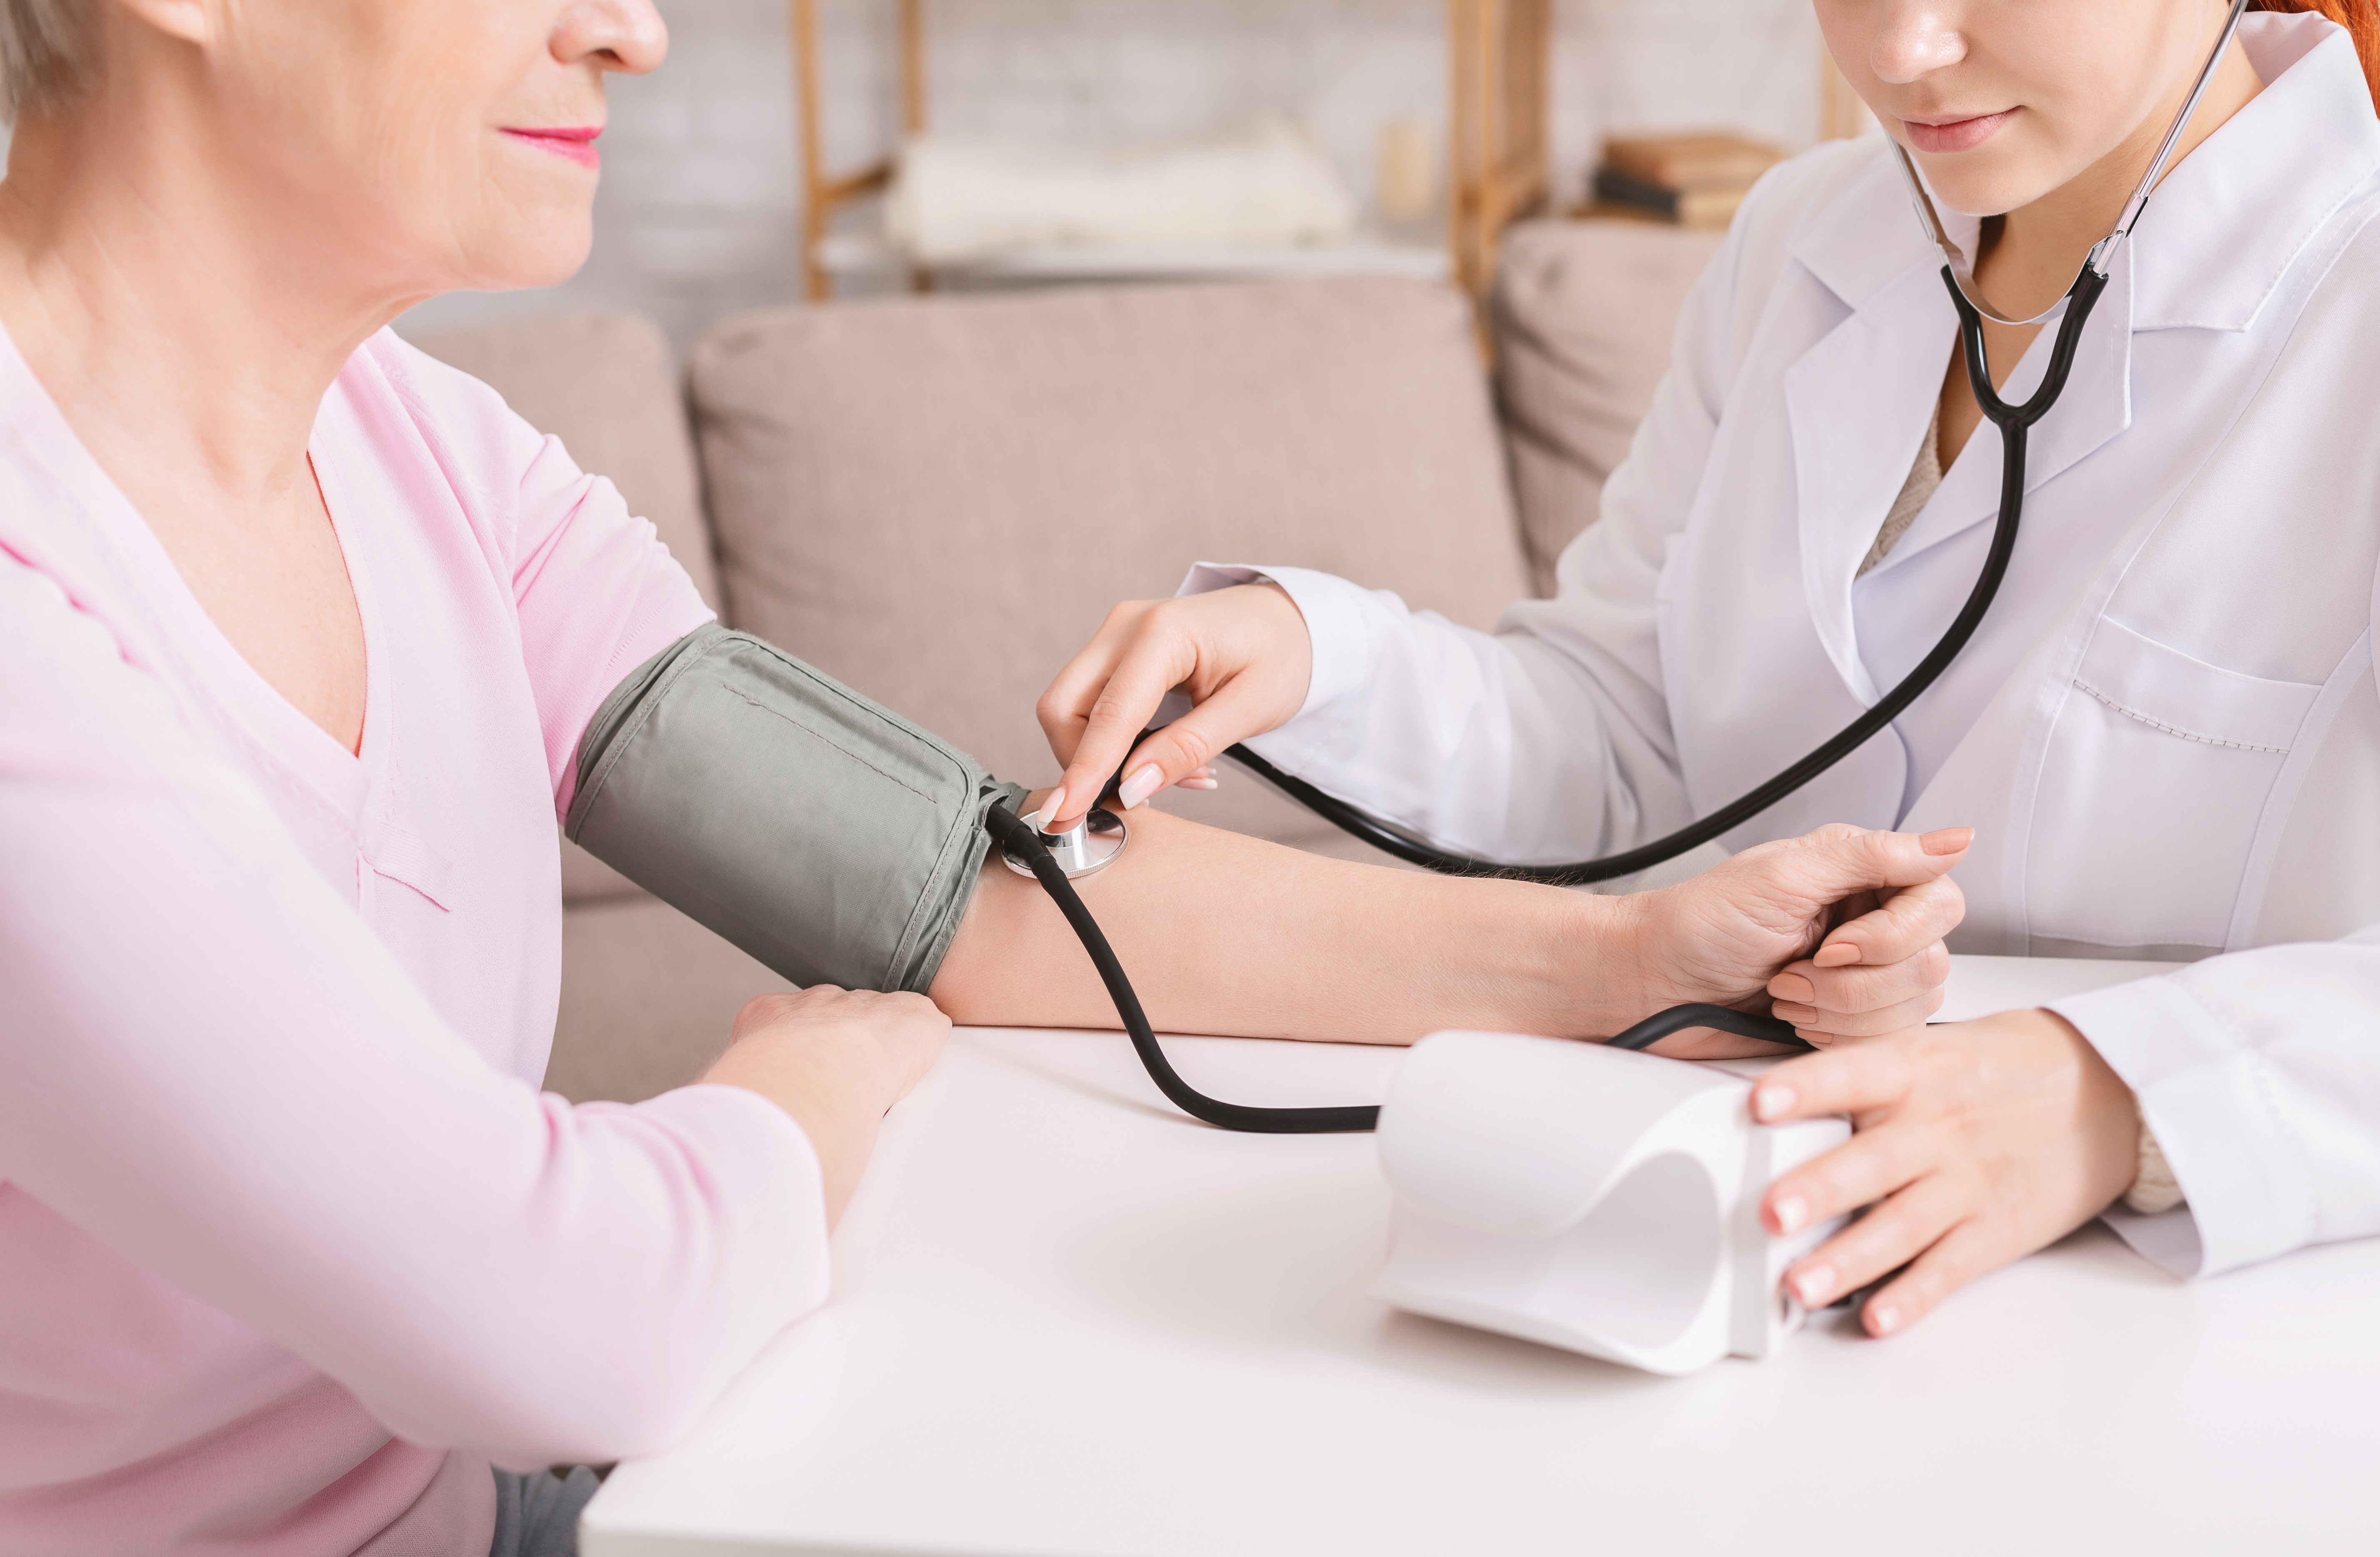 Mit jelent a karok közti vérnyomáskülönbség? - EgészségKalauz